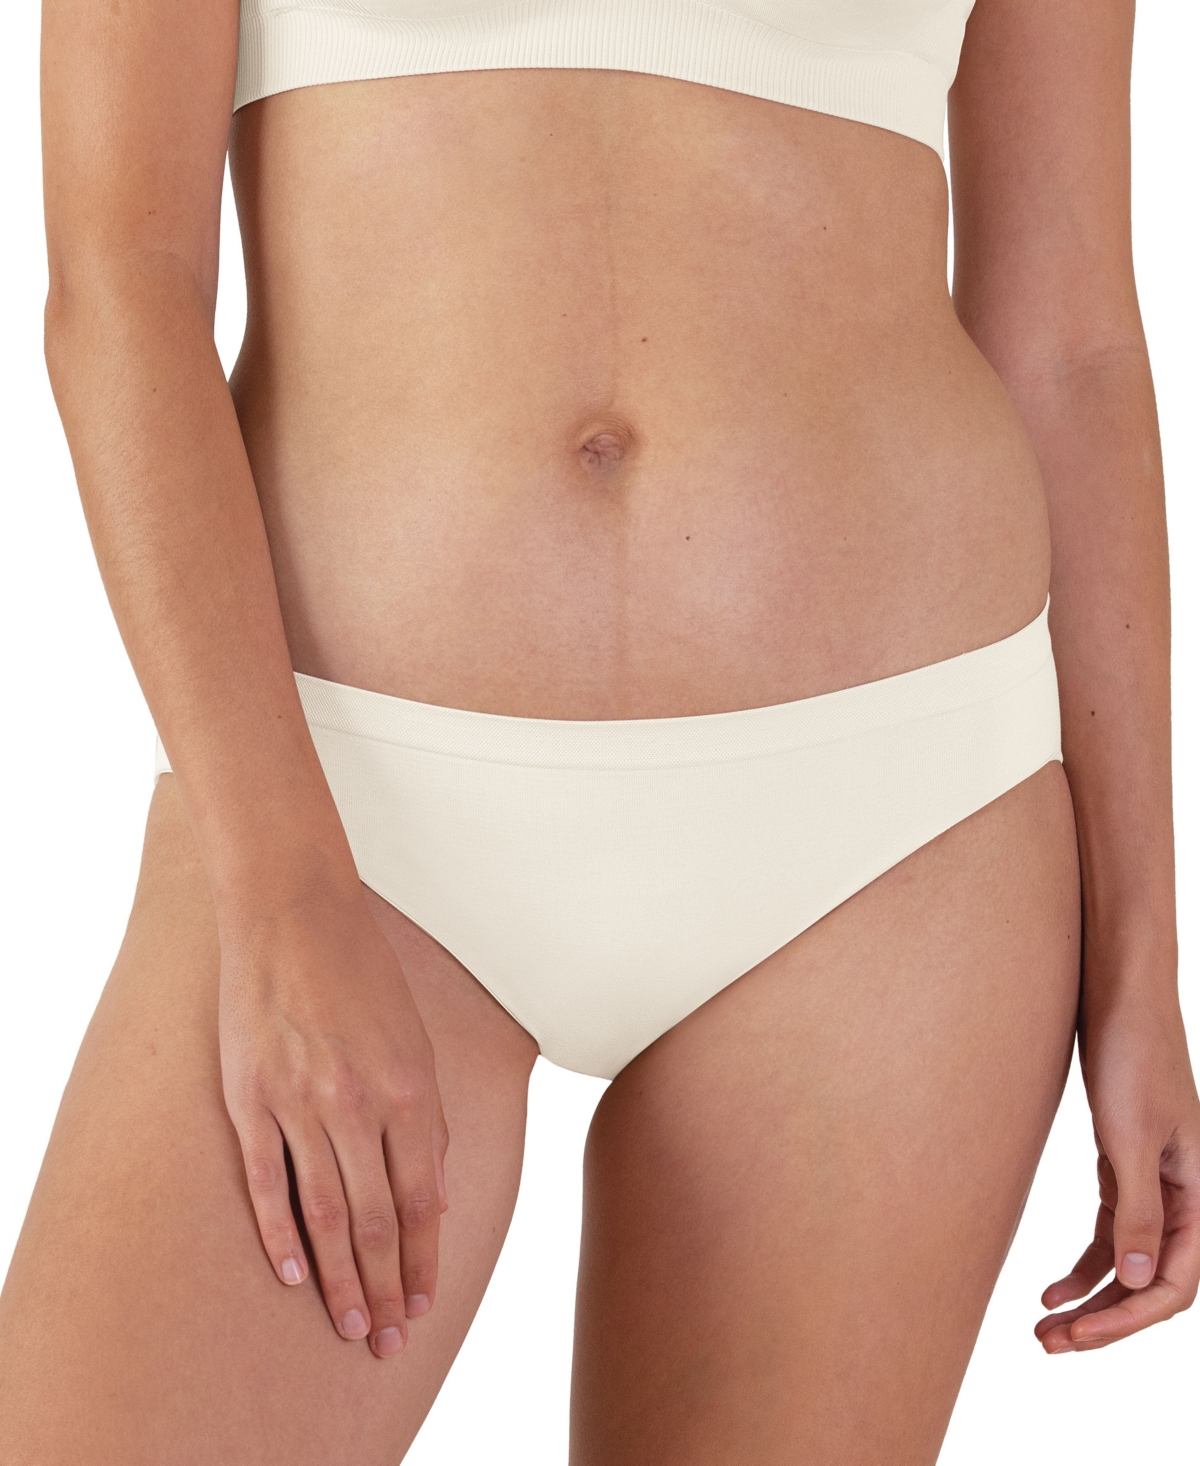 Bravado Designs Women's Mid Rise Seamless Panty